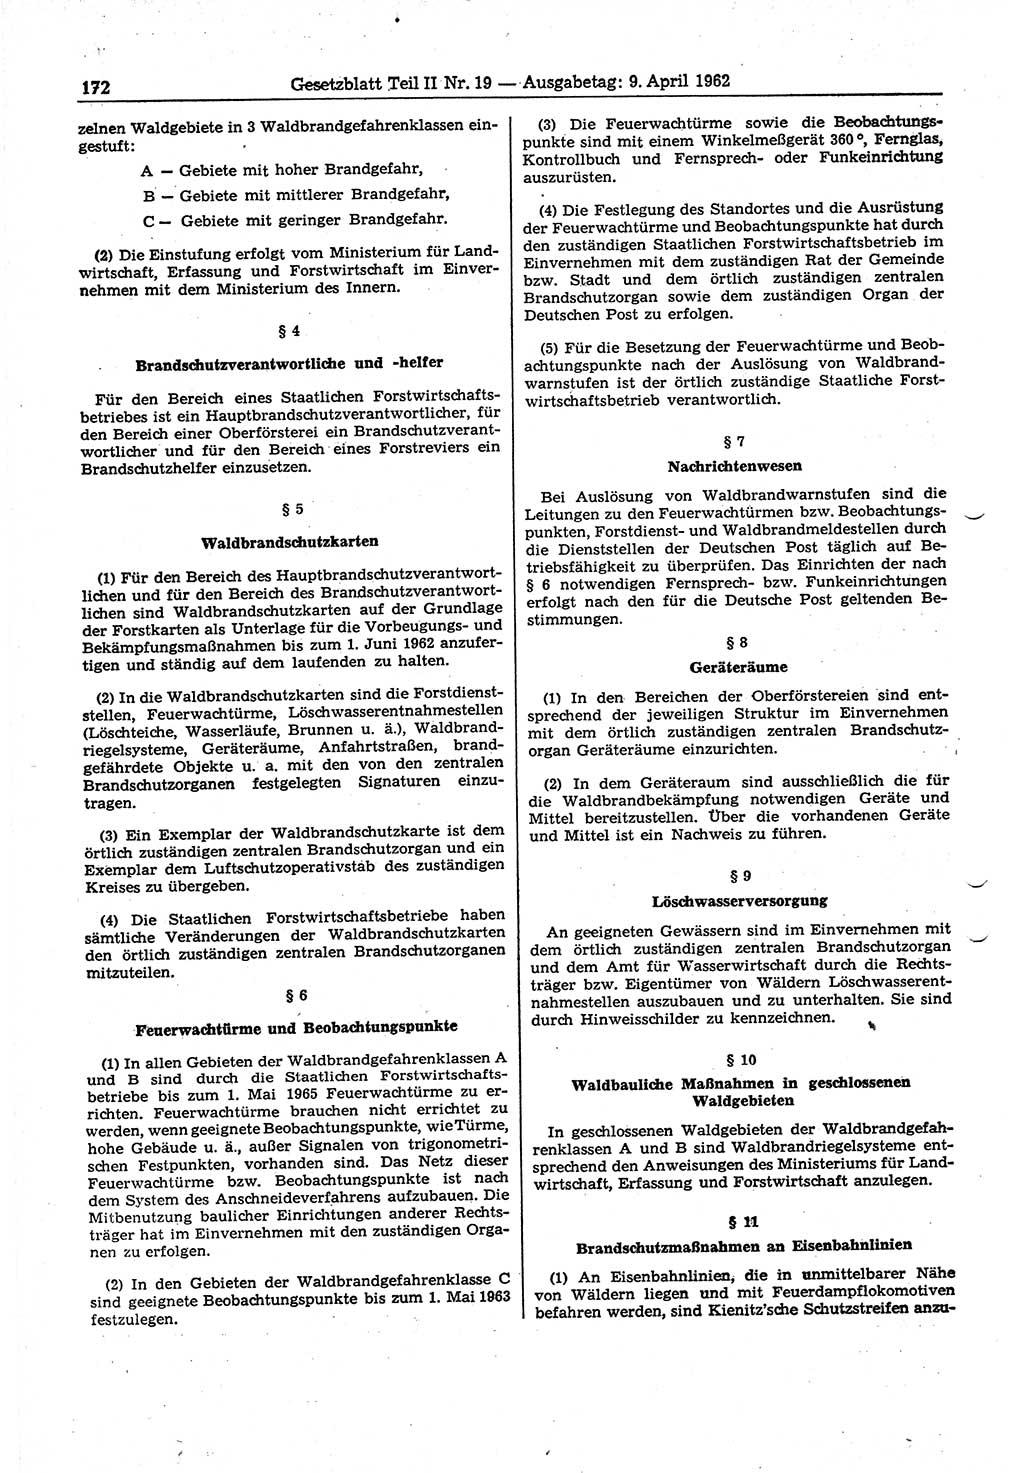 Gesetzblatt (GBl.) der Deutschen Demokratischen Republik (DDR) Teil ⅠⅠ 1962, Seite 172 (GBl. DDR ⅠⅠ 1962, S. 172)